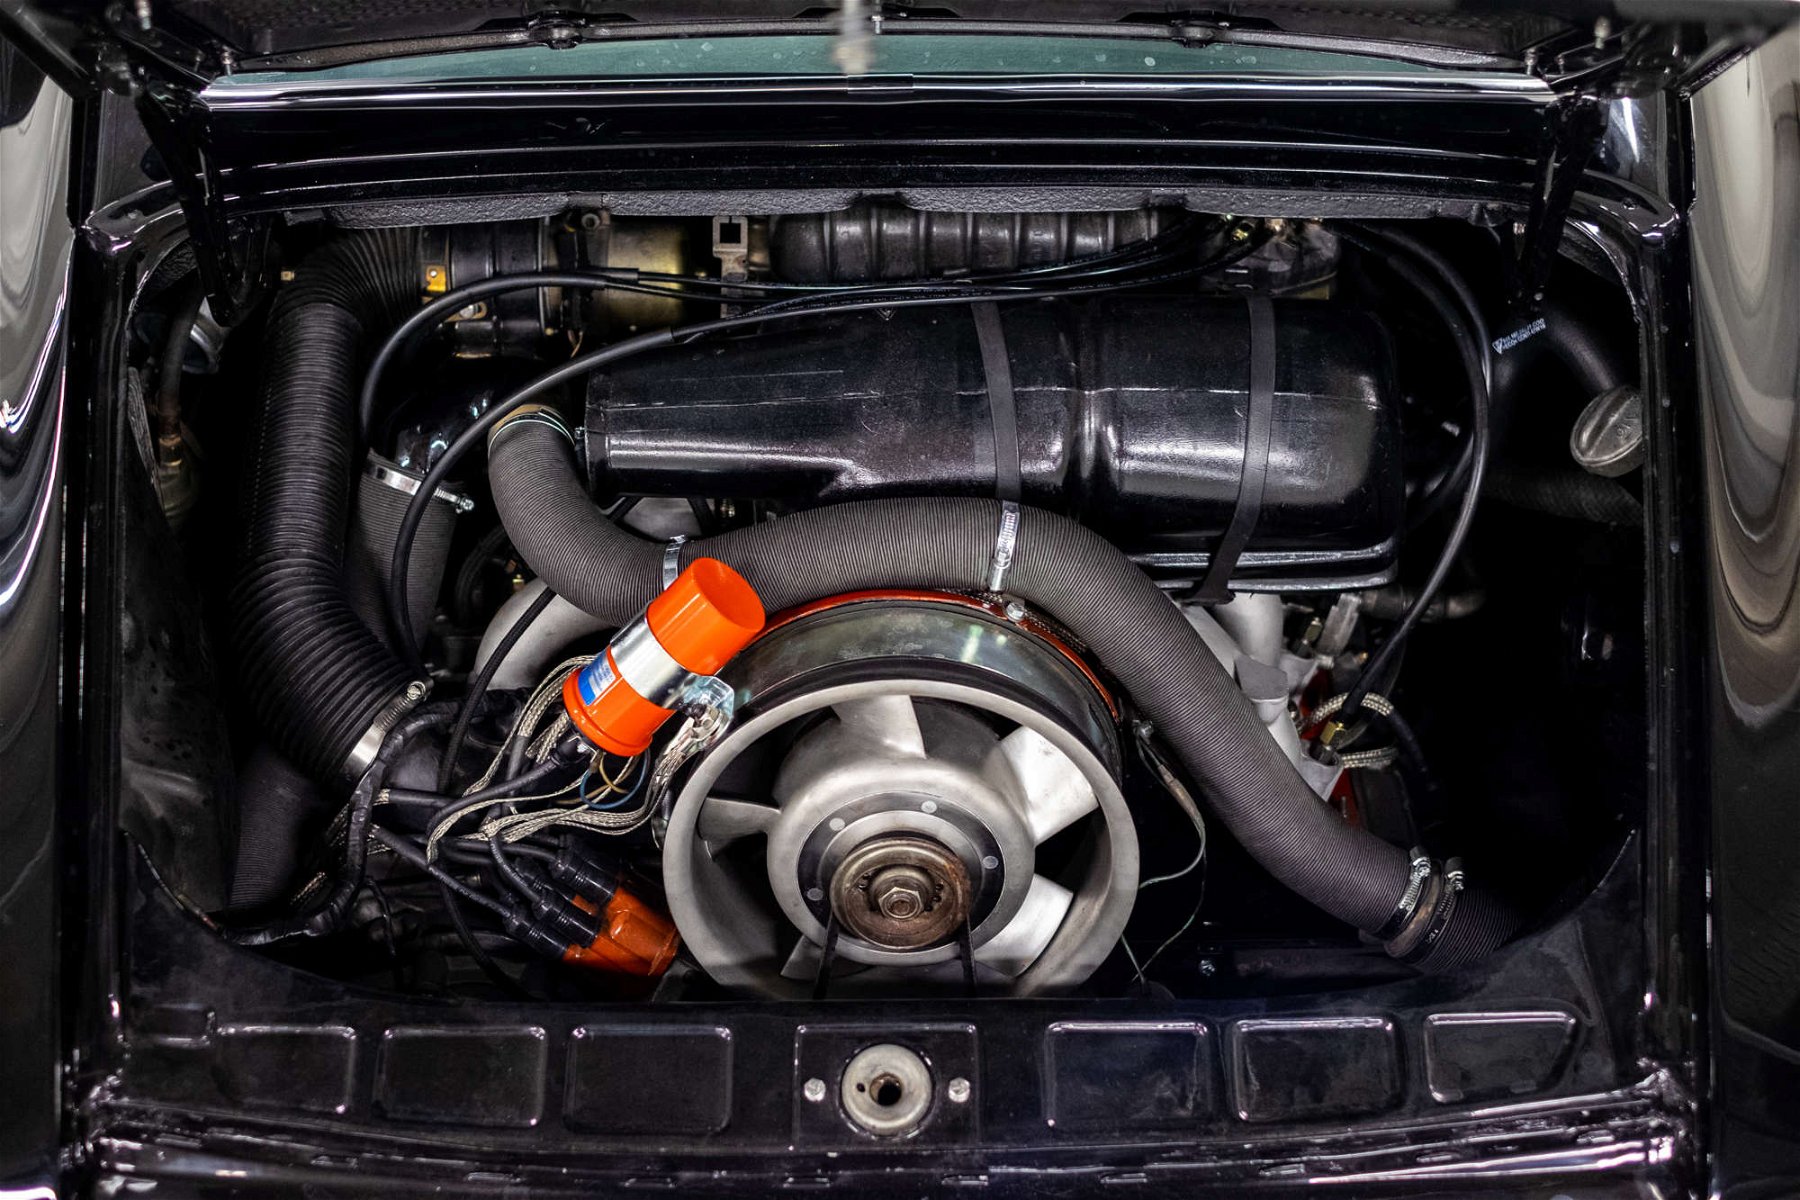 2021 porsche 911 engine 3.0 l 6 cylinder